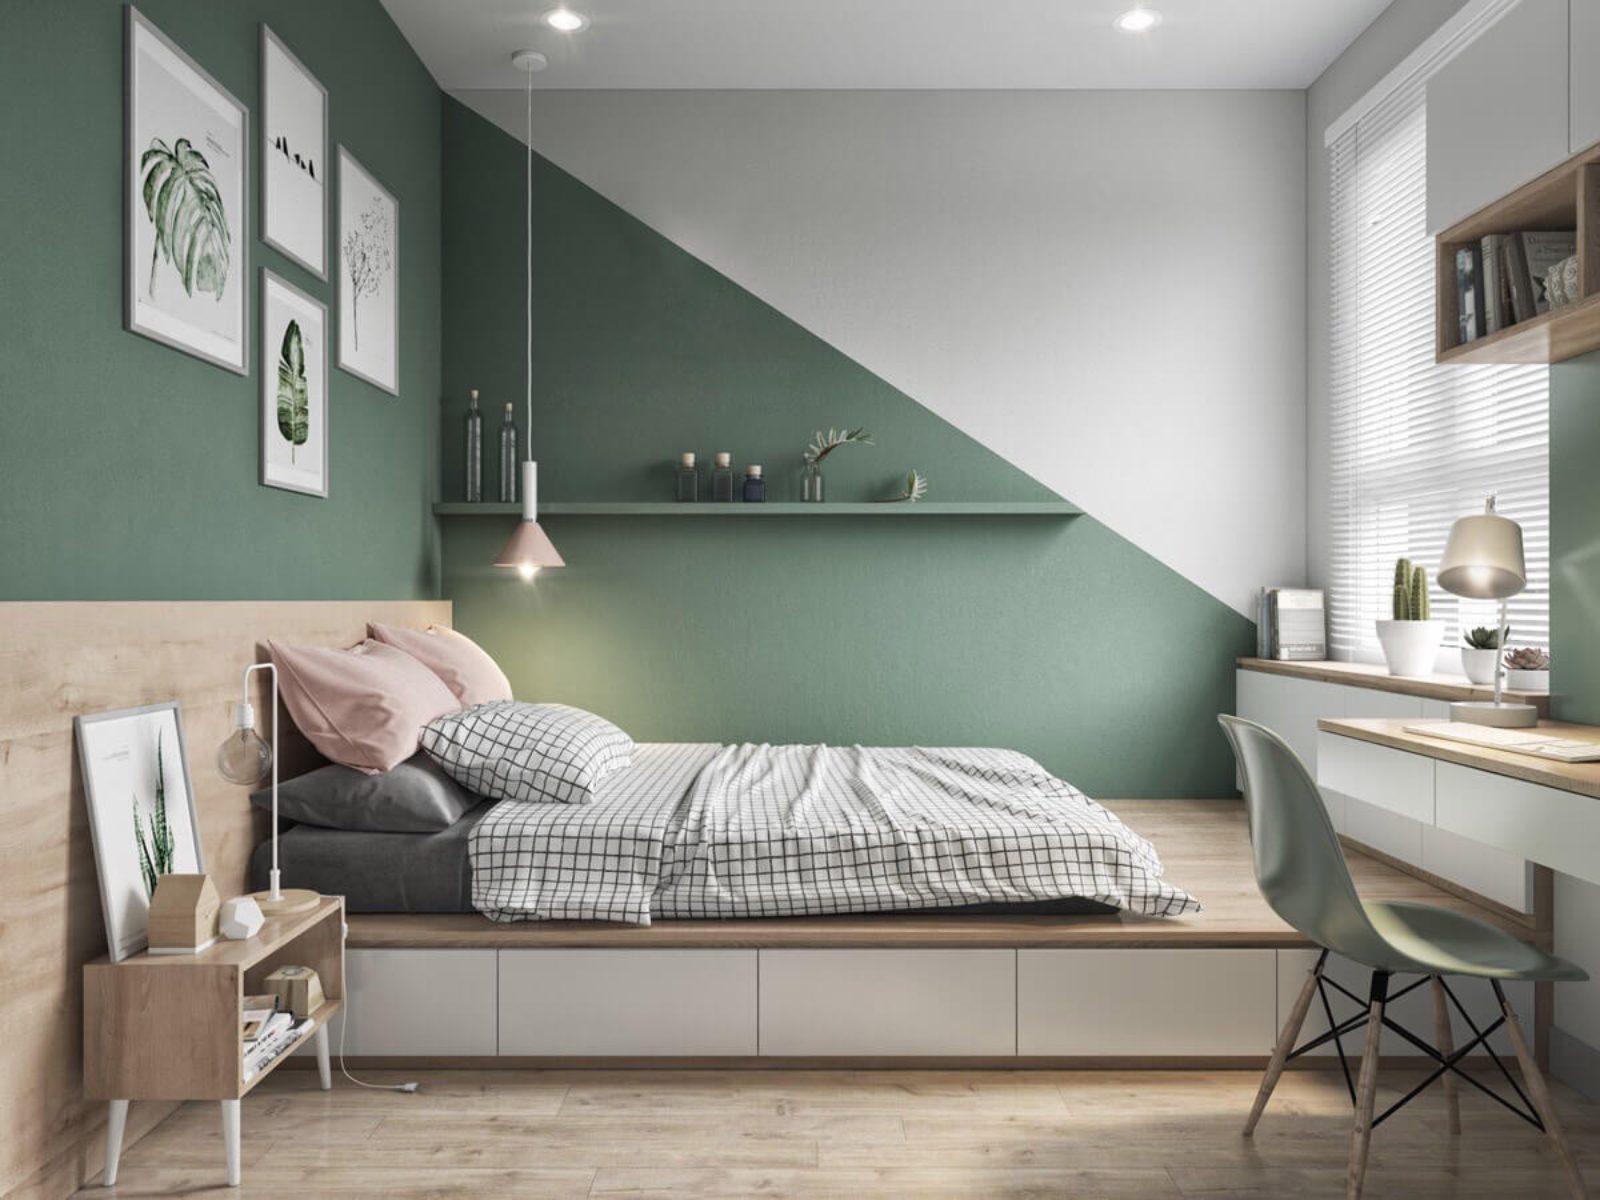 Phòng ngủ màu xanh lá kết hợp trang trí cây xanh tràn đầy sức sống